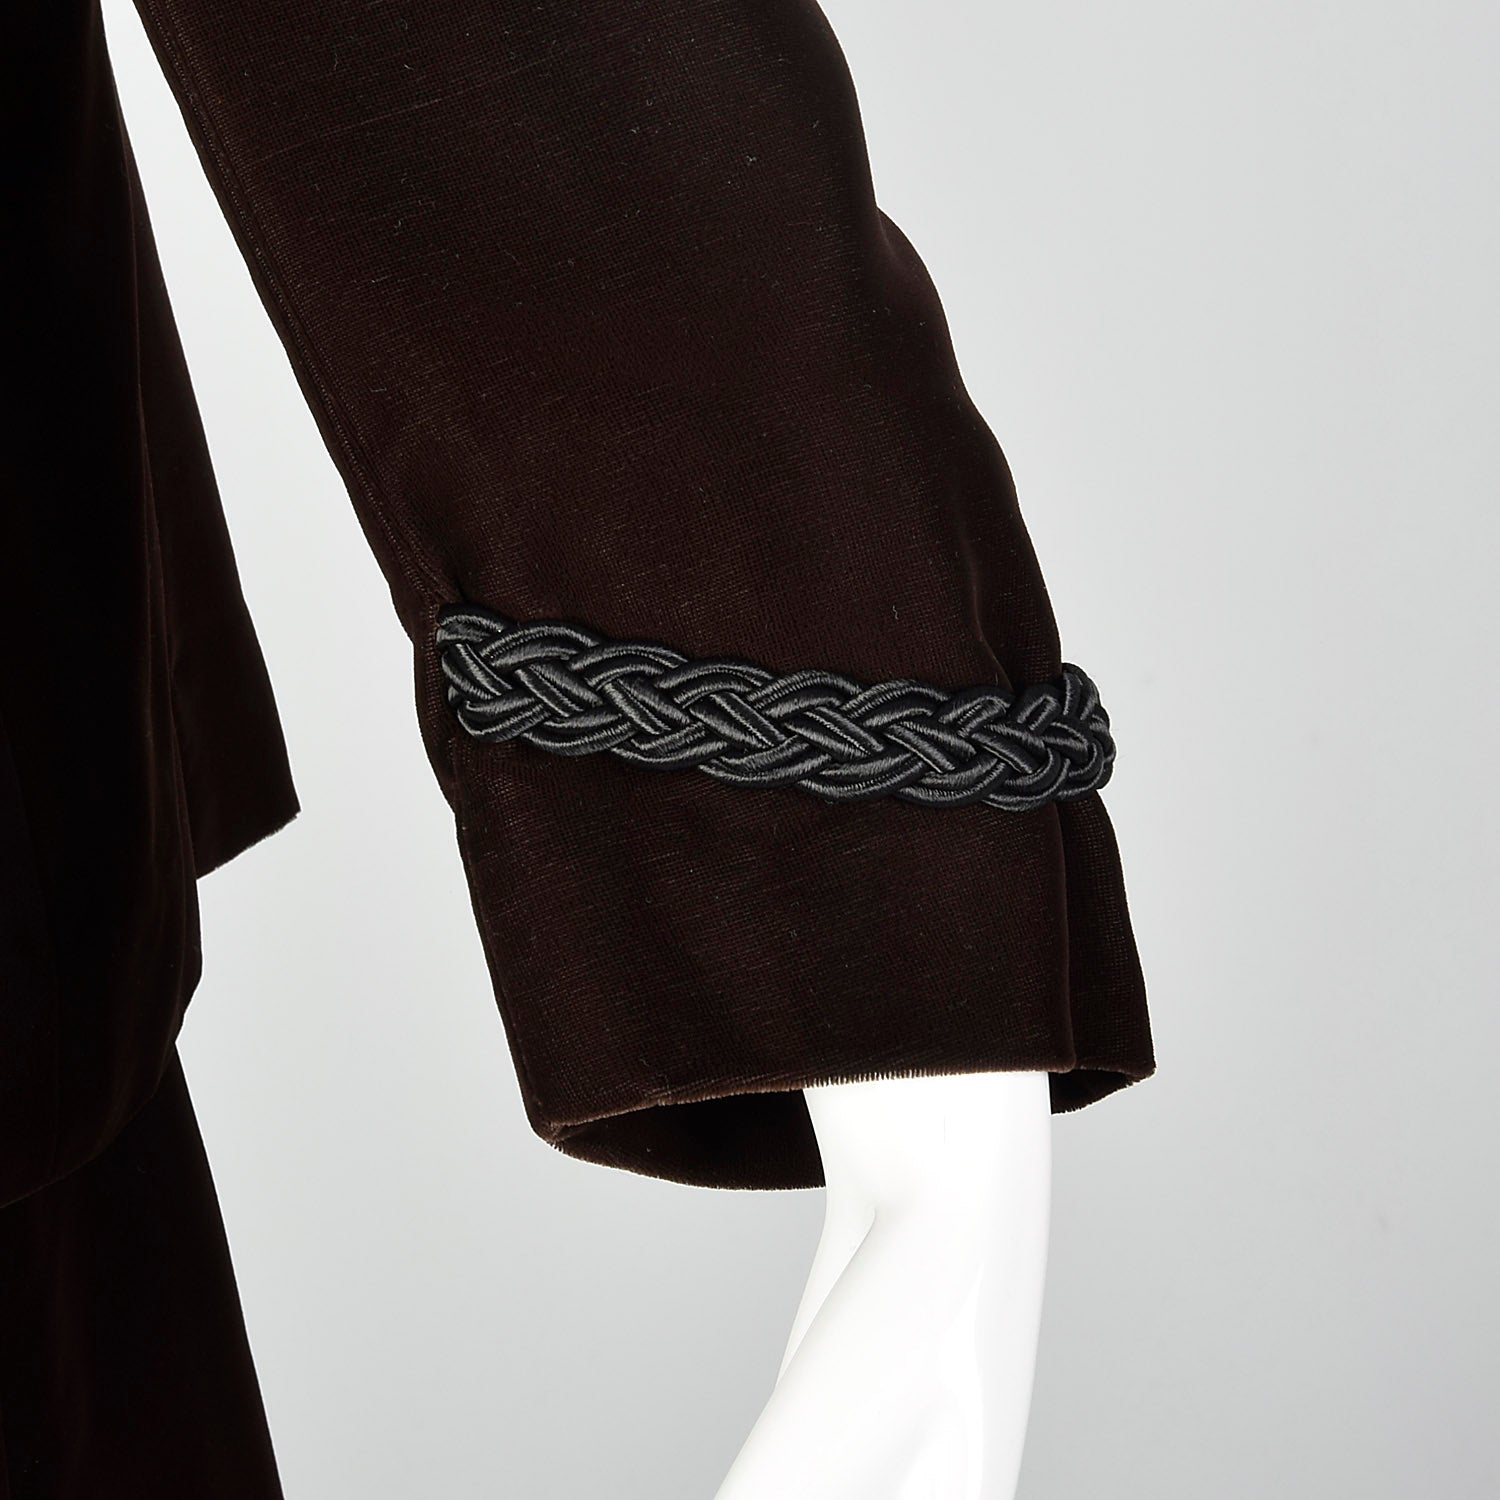 Medium Pierre Balmain 1970s Brown Velvet Skirt Suit